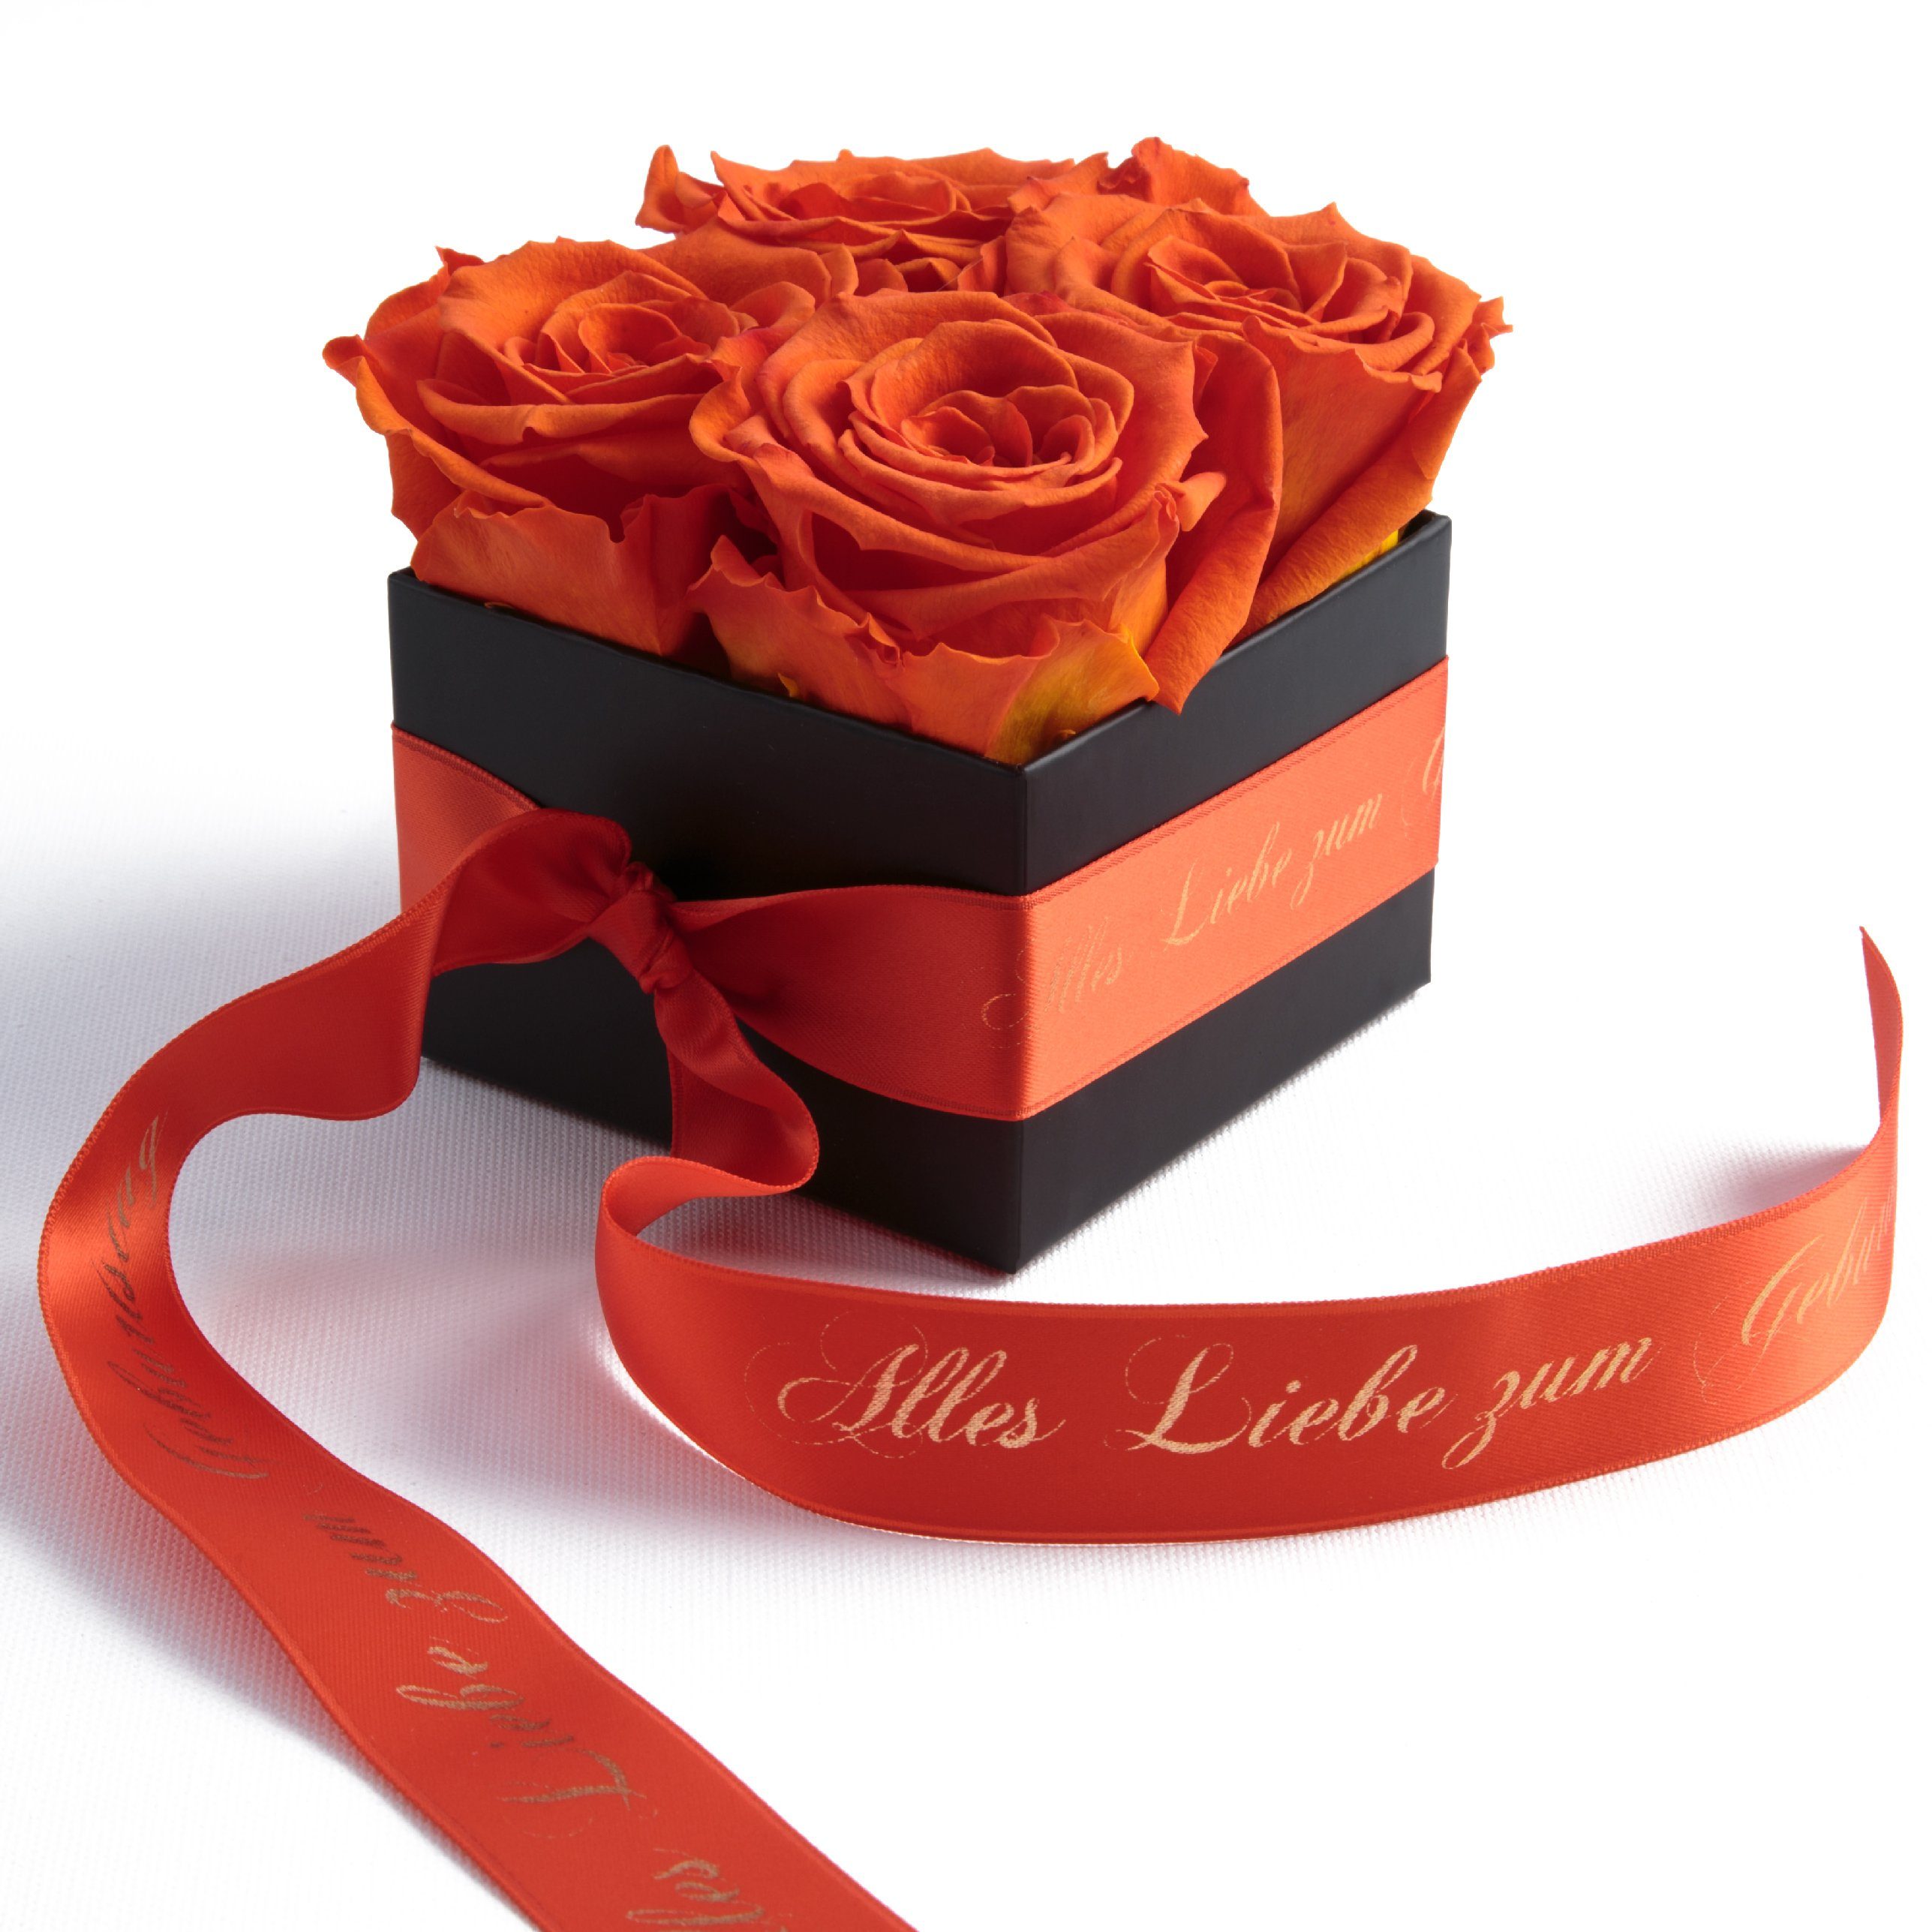 ROSEMARIE SCHULZ Heidelberg Dekoobjekt Rosenbox echte Rosen Alles Liebe zum Geburtstag Geschenk für Frauen (1 St), Echte konservierte Rosen Orange